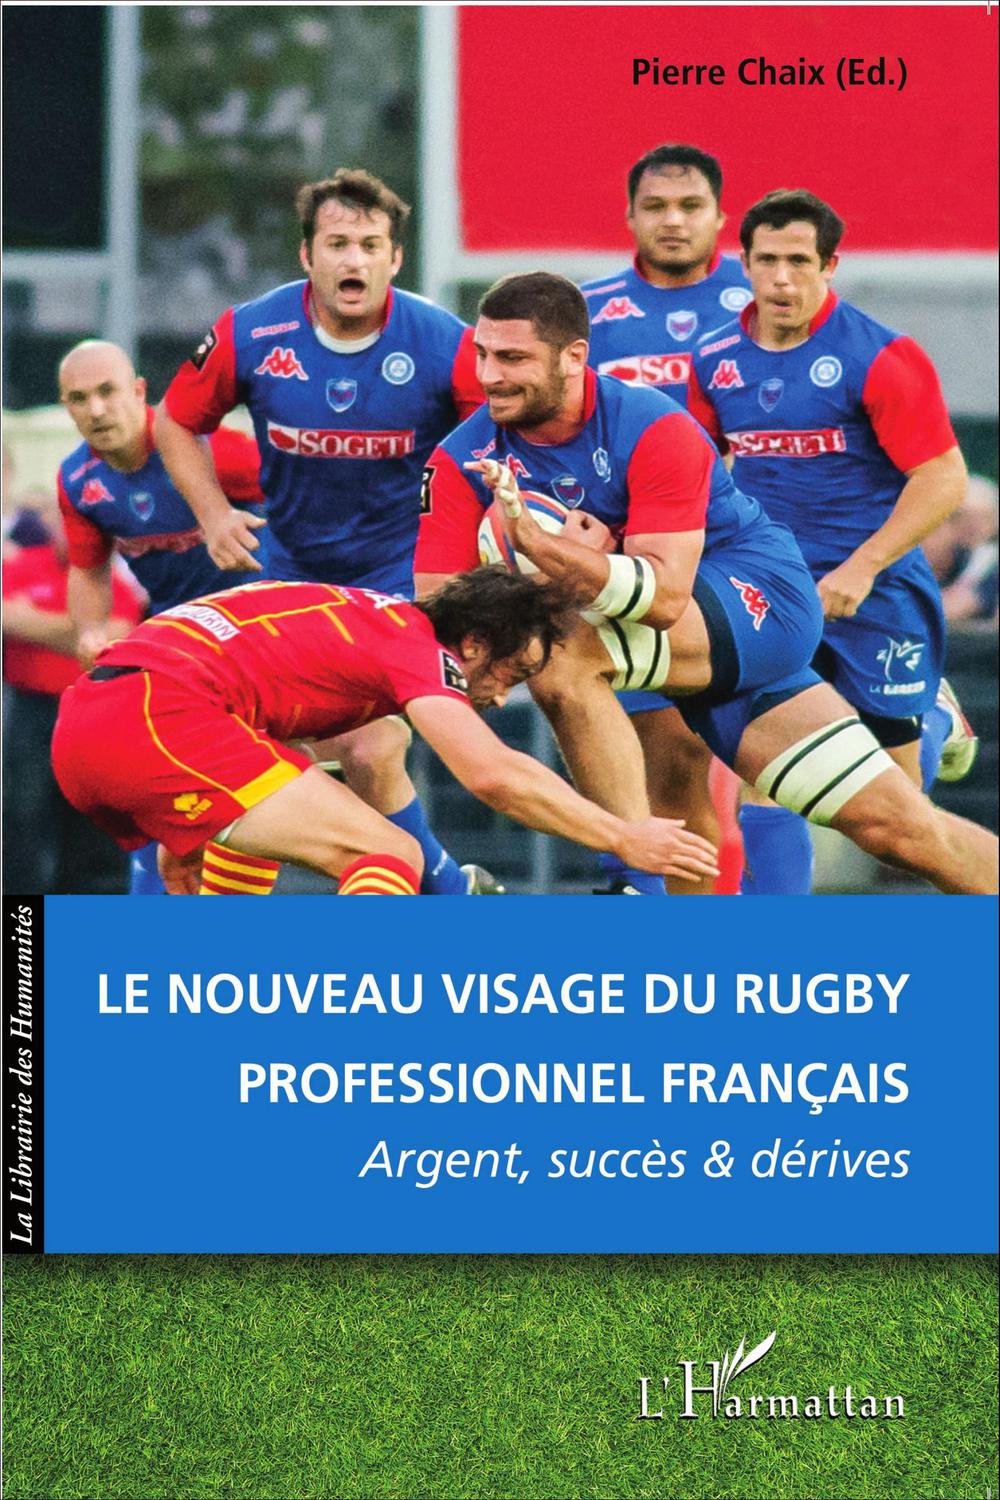 Le nouveau visage du rugby professionnel français - Pierre Chaix